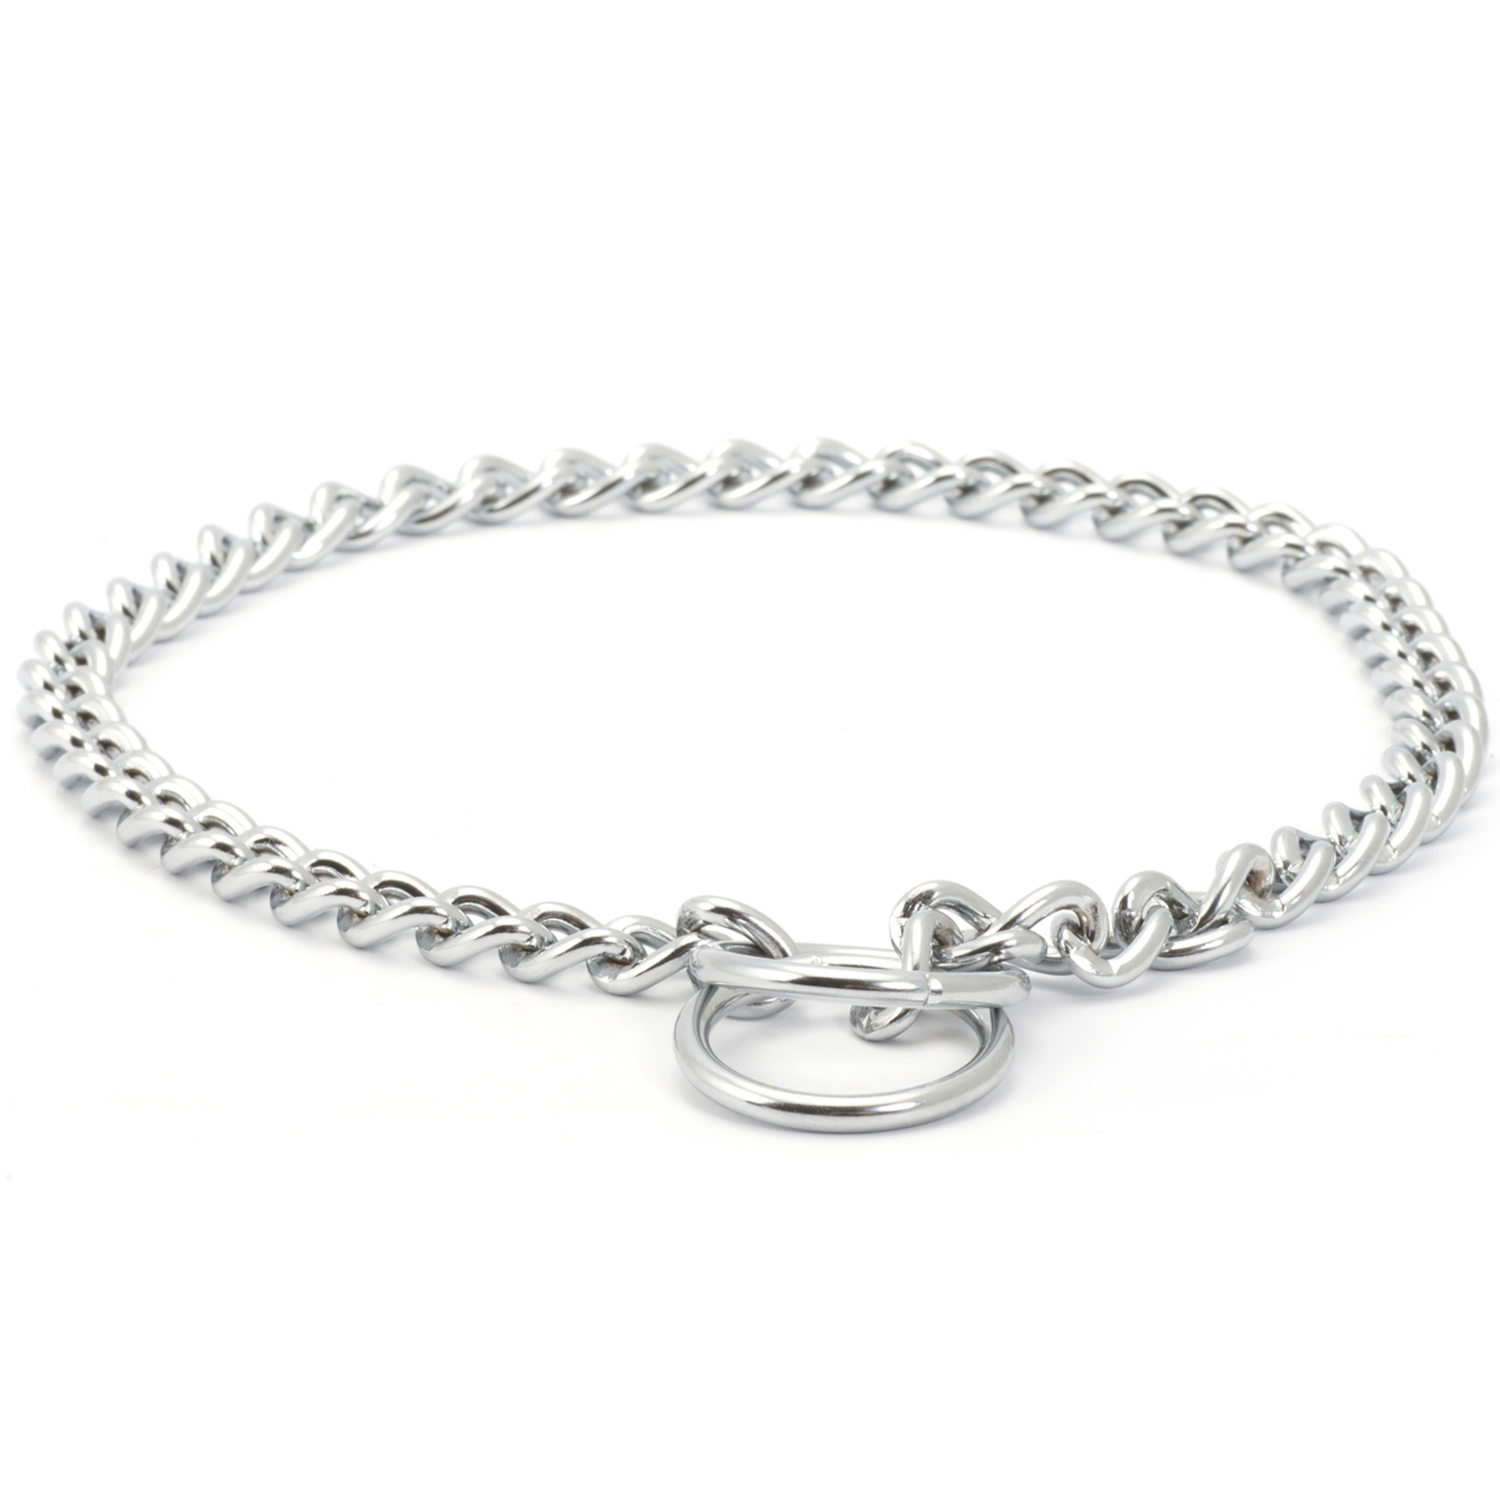 Ancol Silver Check Chain Dog Collar 65cm Image